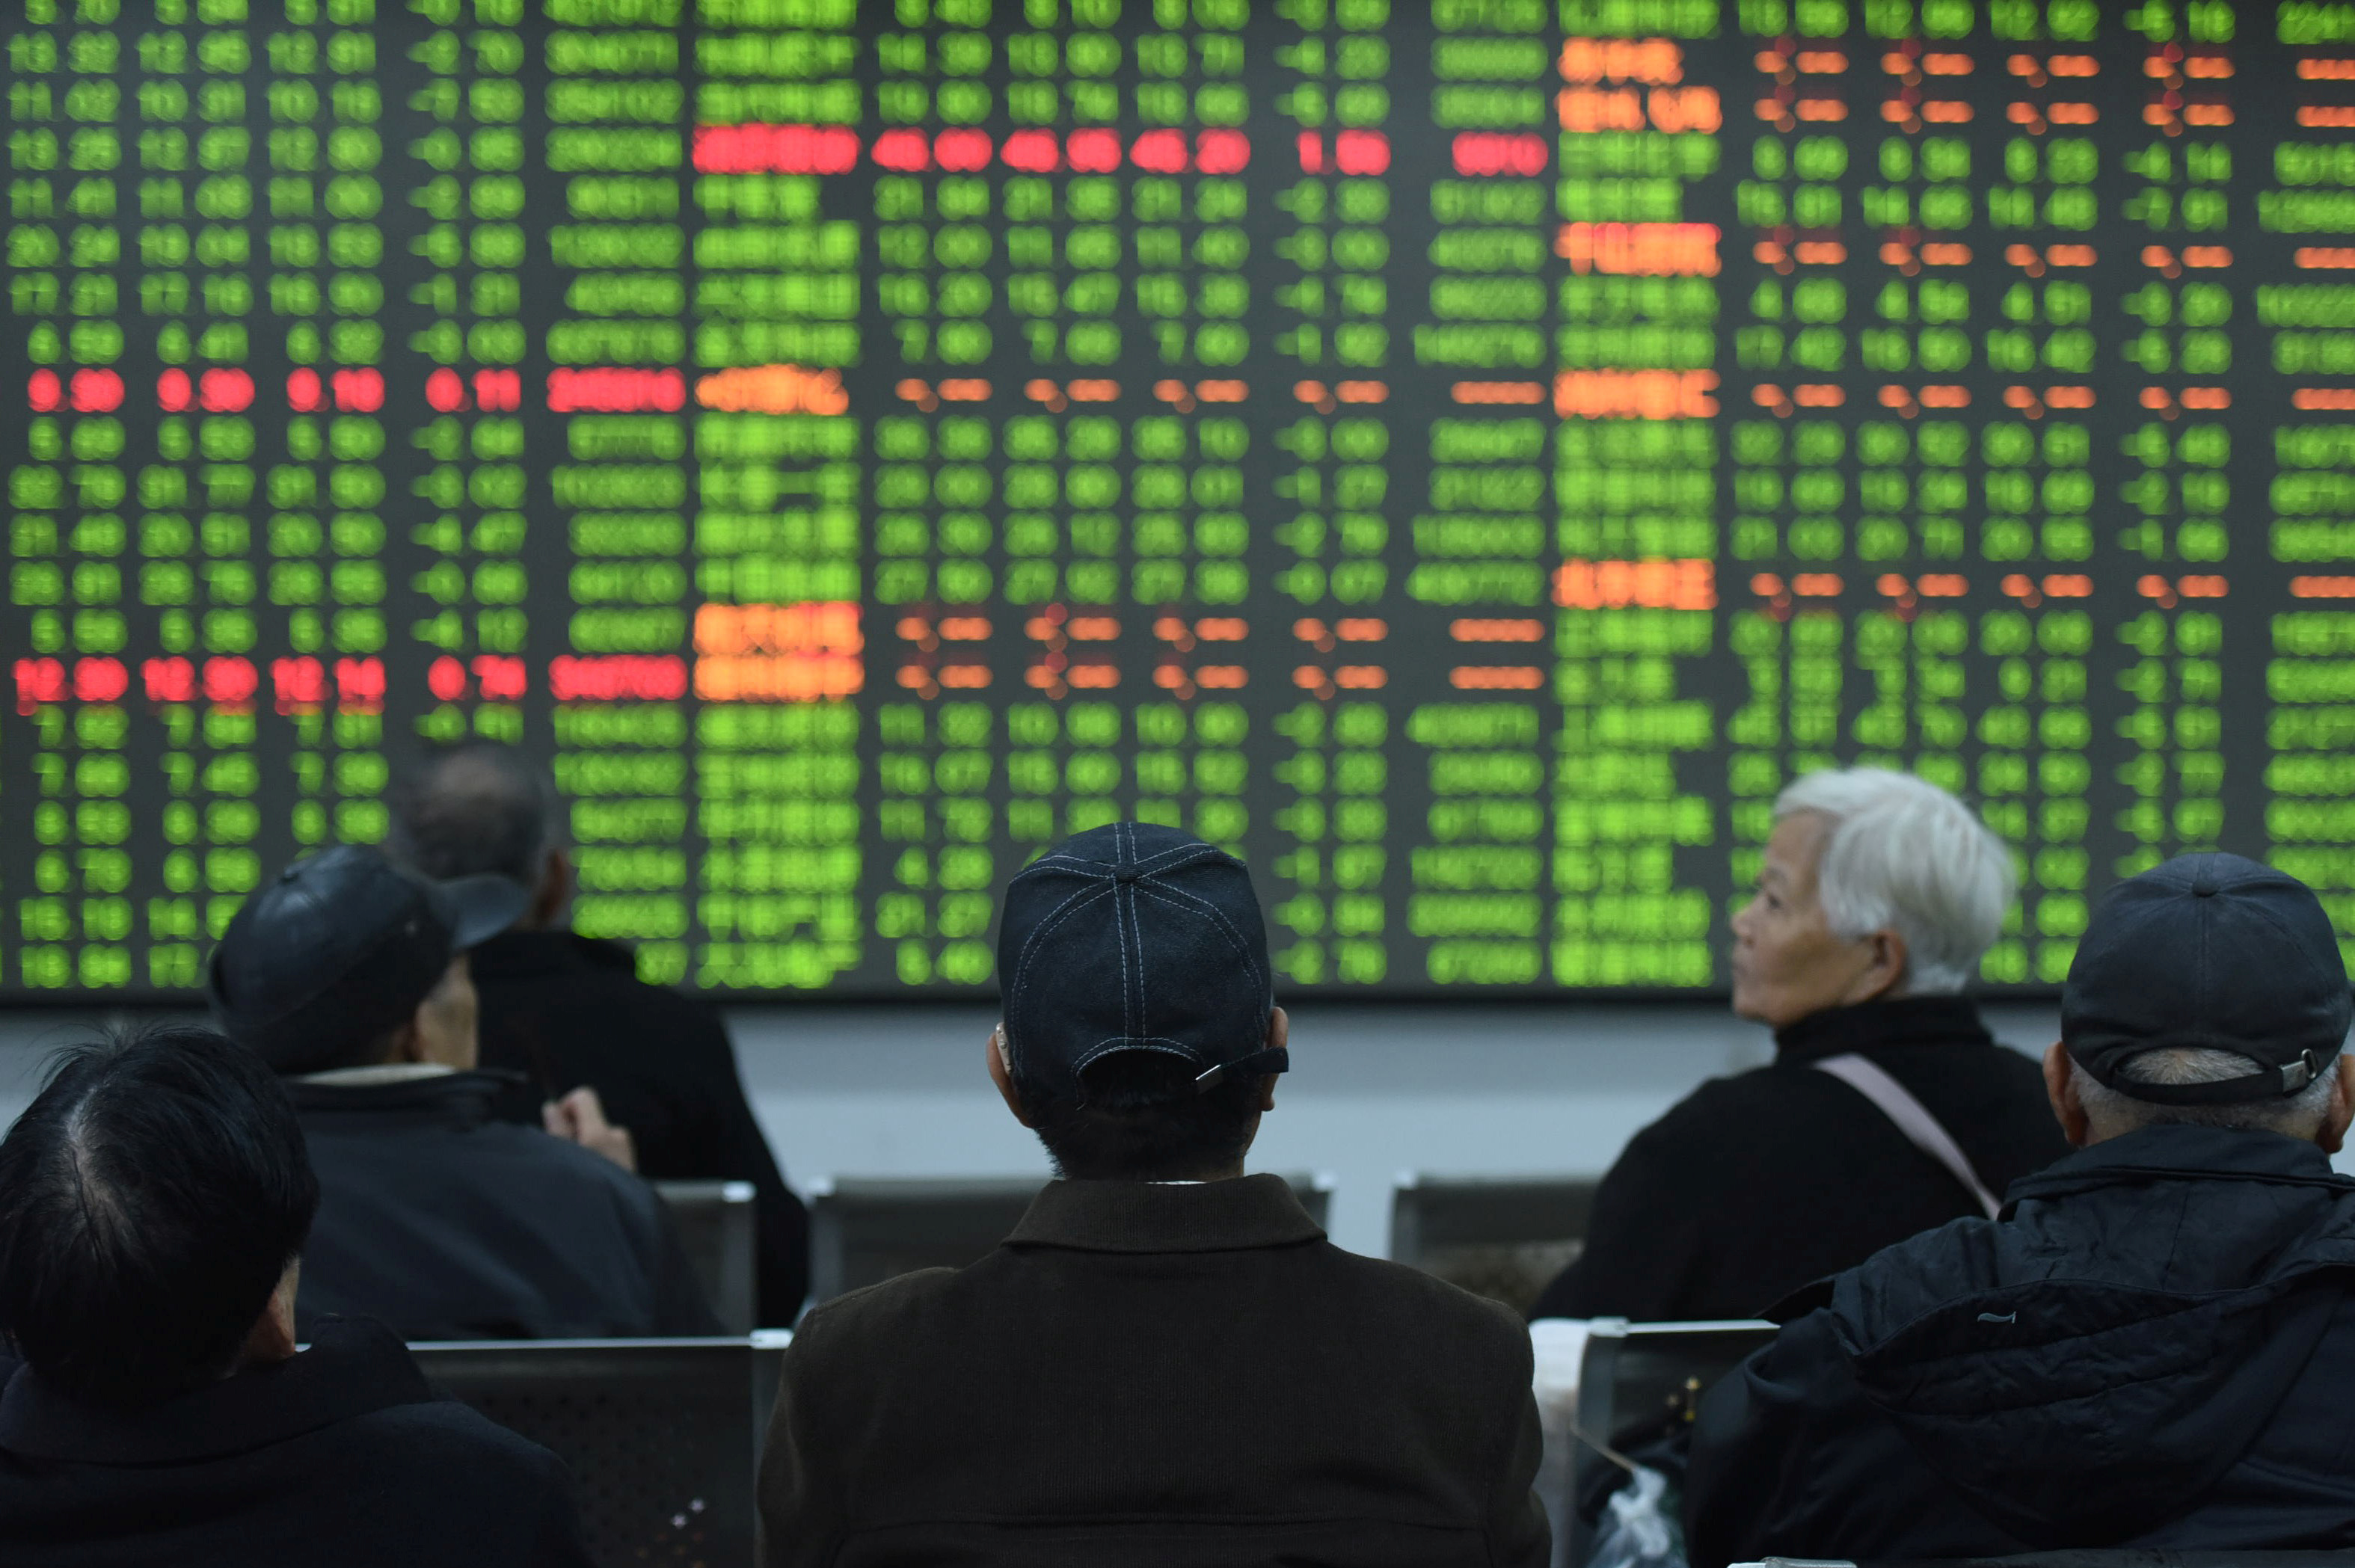 الصين في بؤرة الاهتمام – ارتفاع اليوان بوصة ؛  الأسهم آخذة في الارتفاع.  إيفرجراند يحشد دعم الدائنين